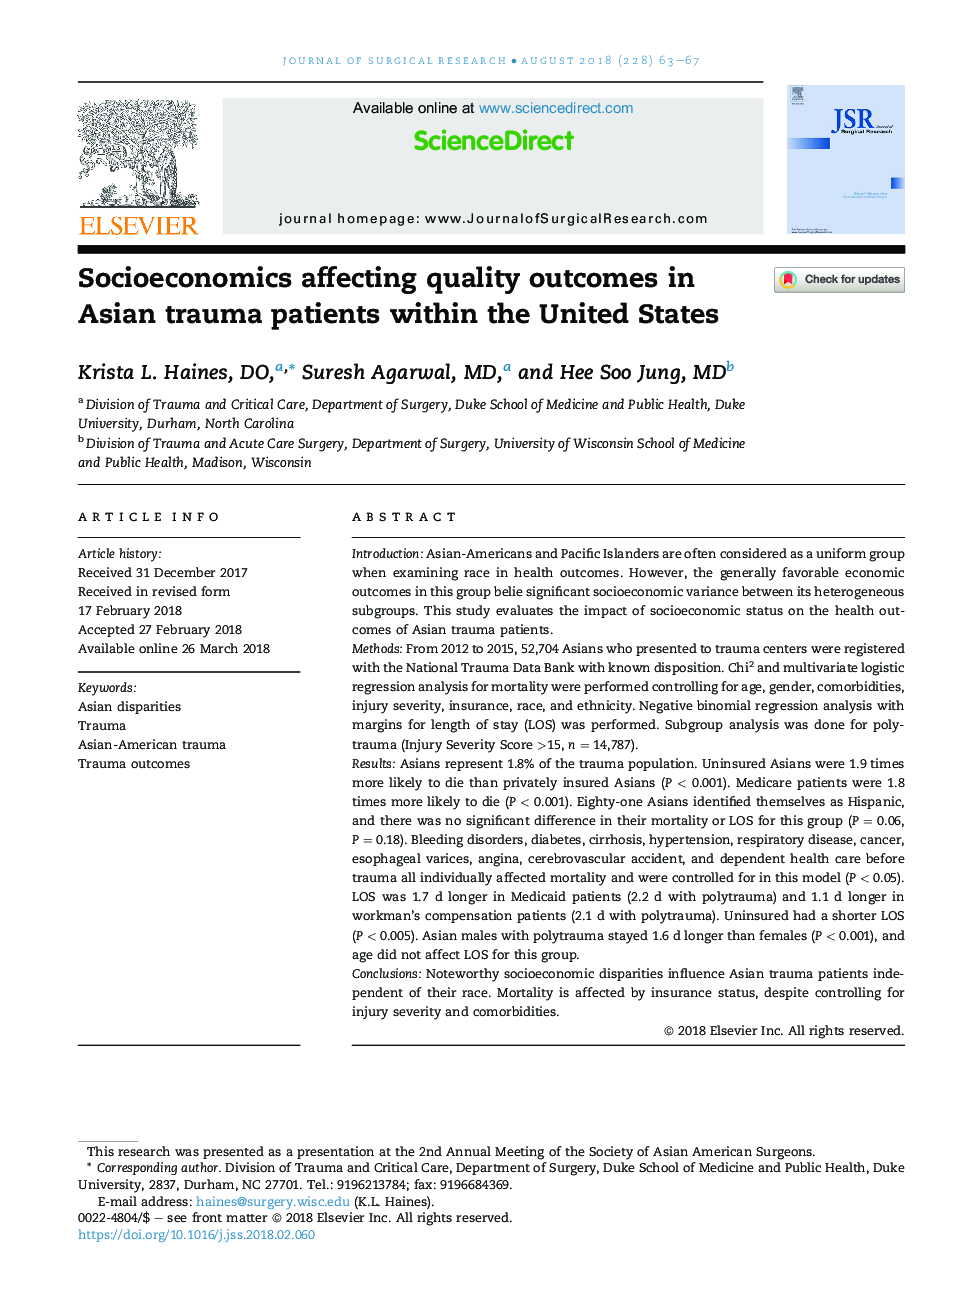 اقتصاد اجتماعی که تأثیرات کیفیت را در بیماران آسیبدی در آسیا دارد در ایالات متحده تاثیر می گذارد 